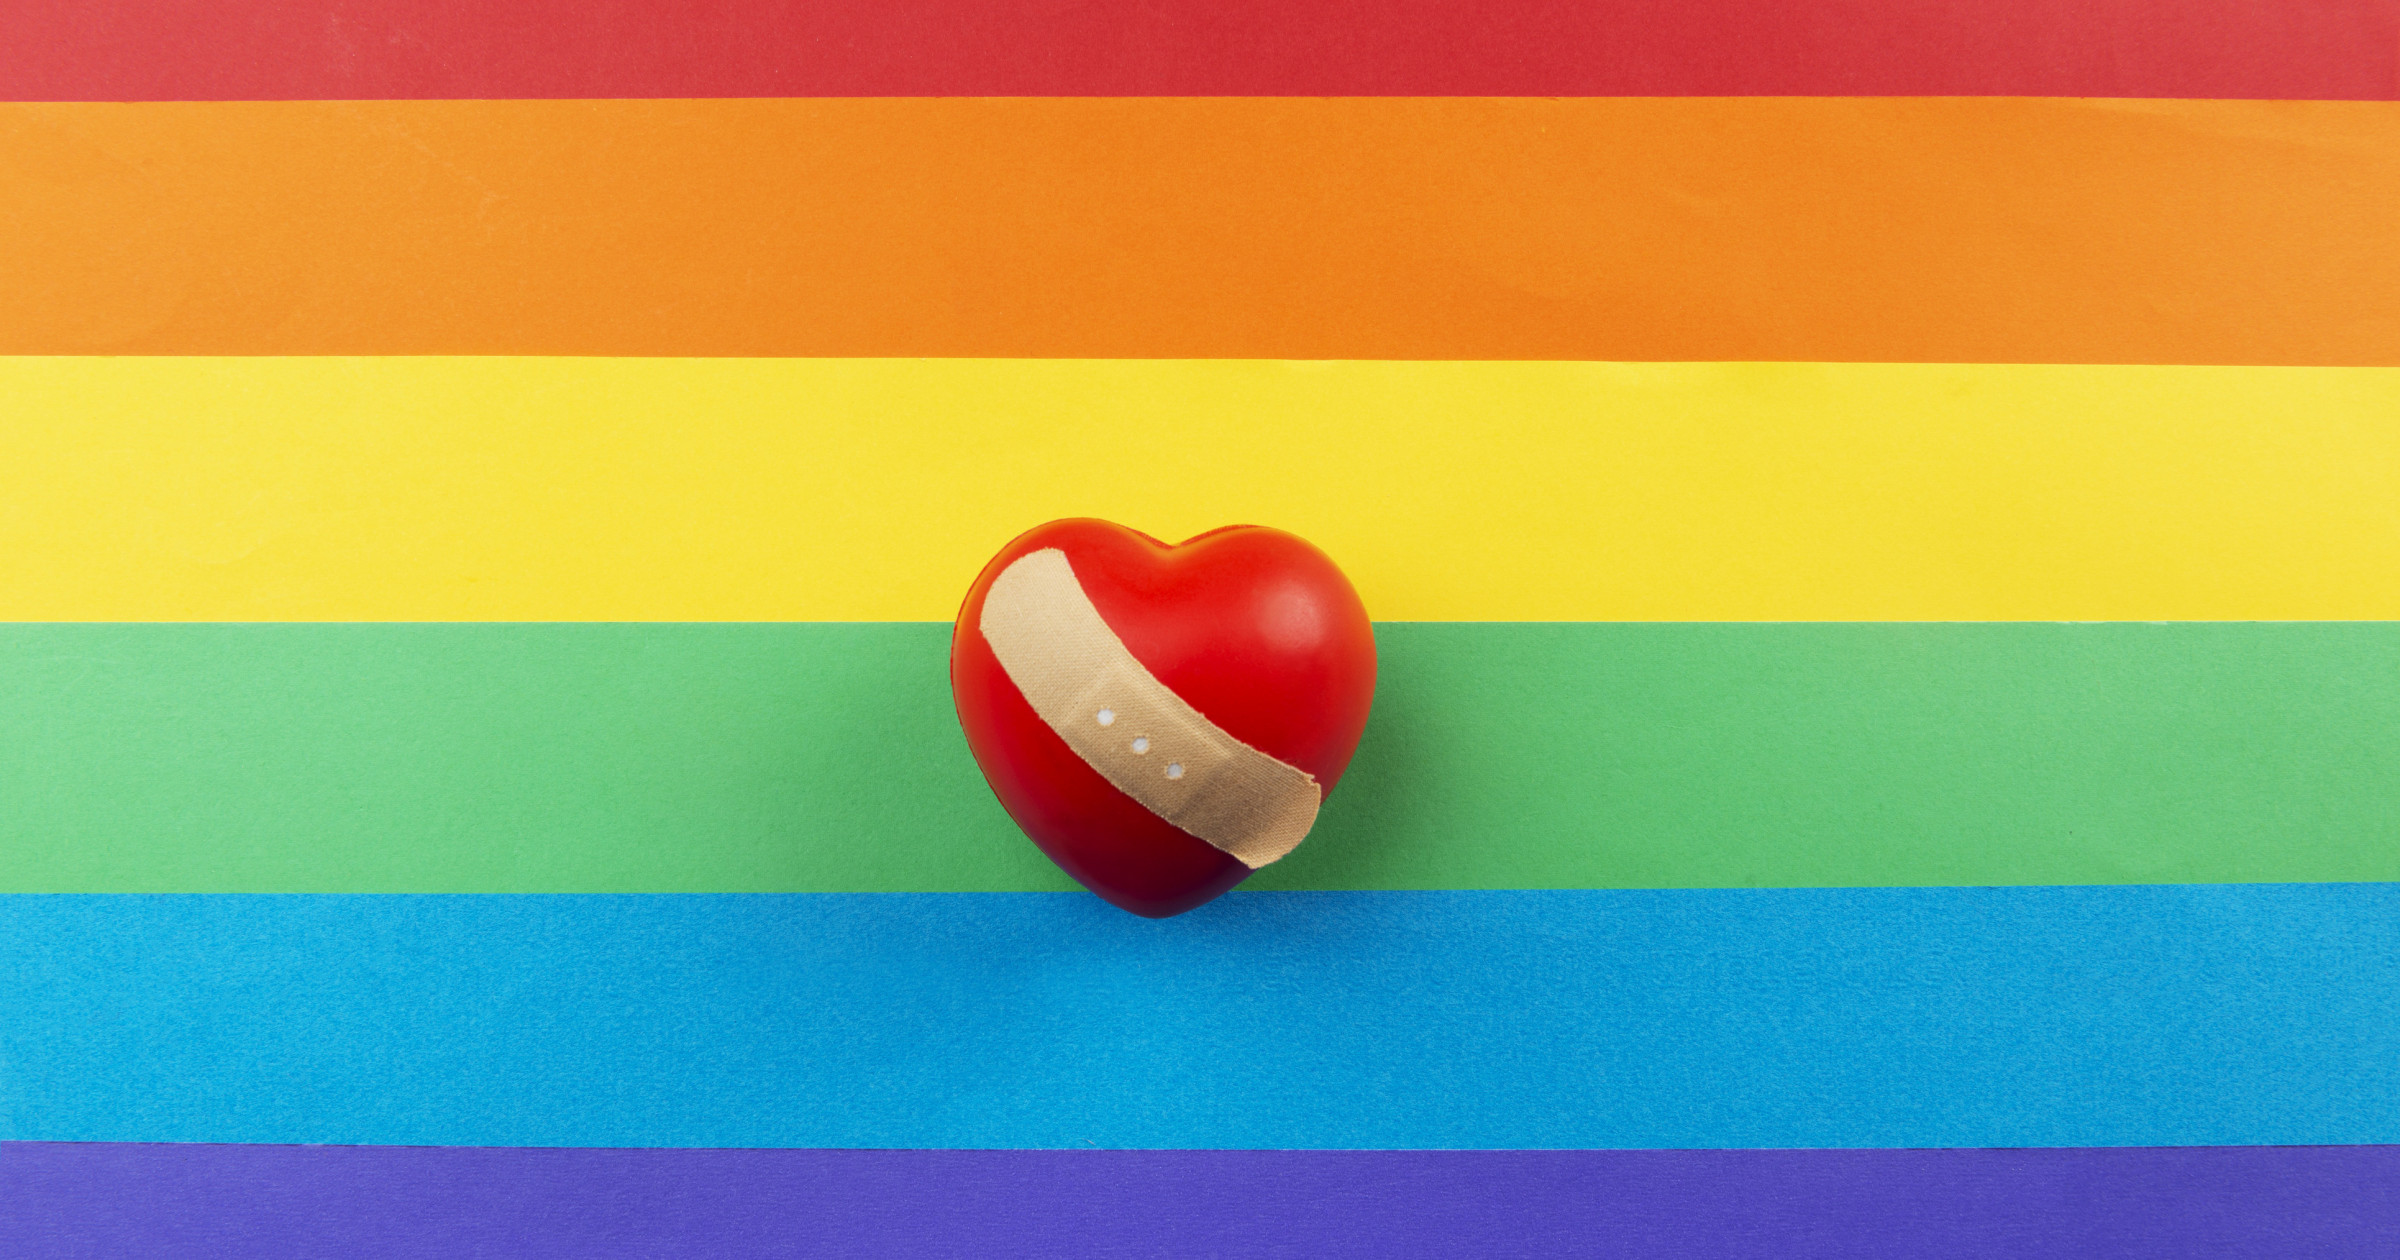 Κορωνοϊός ΗΠΑ: Η ΛΟΑΤΚΙ κοινότητα είναι πιο ευάλωτη στο κορωνοϊό, προειδοποιεί το Ινστιτούτο Δημόσιας Υγείας